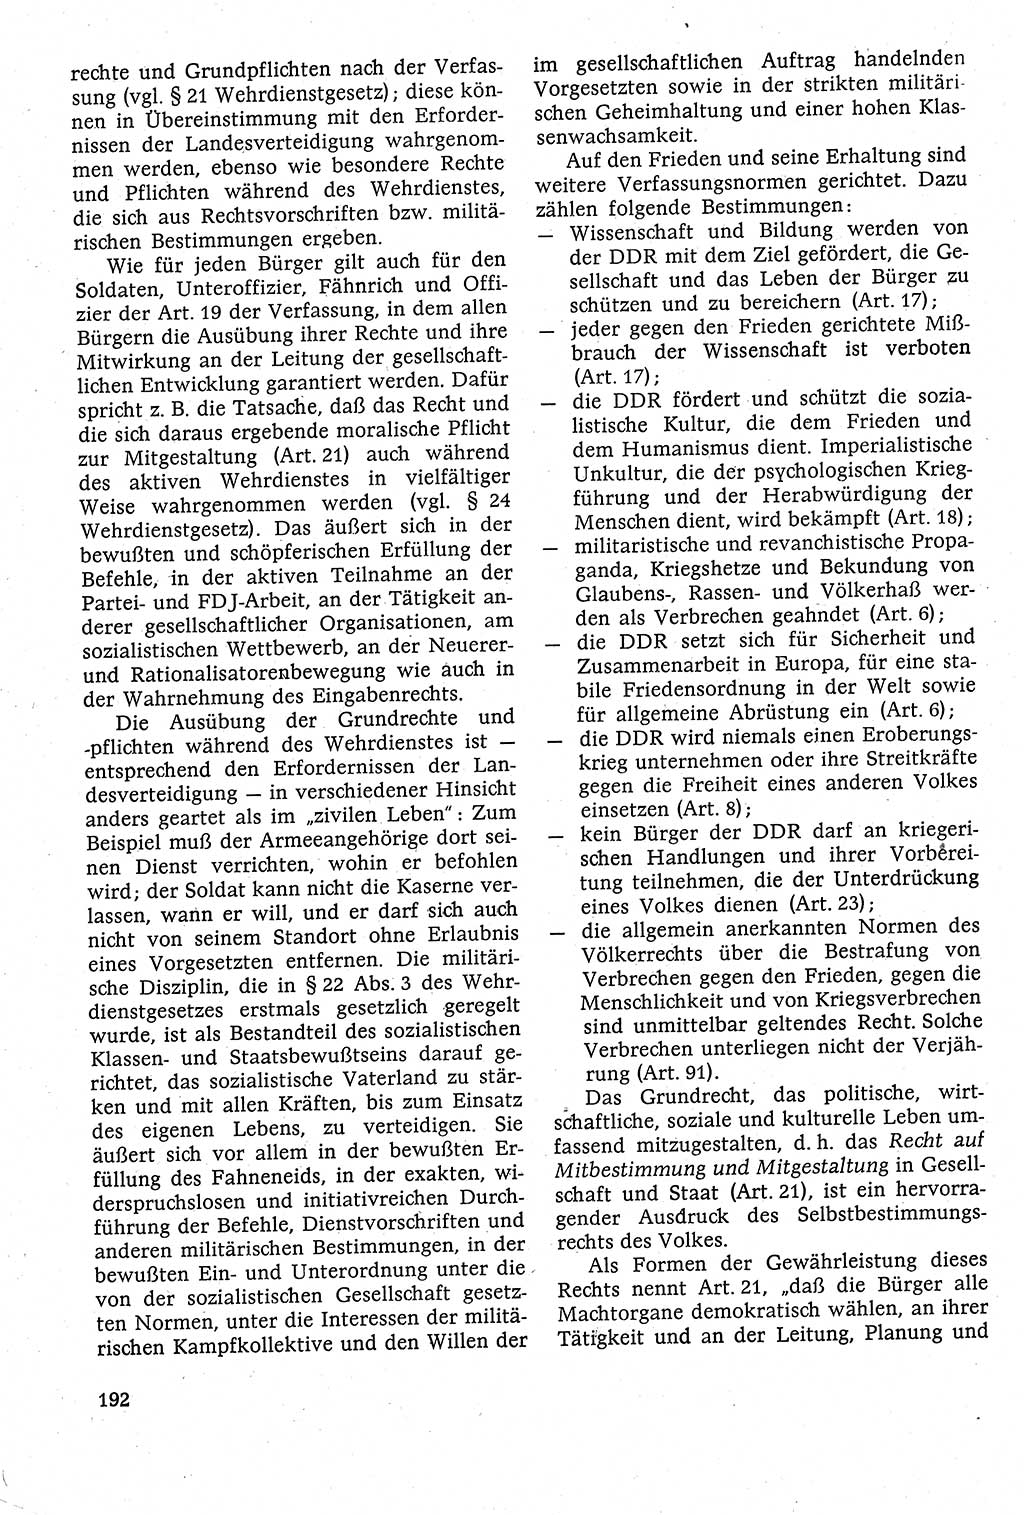 Staatsrecht der DDR [Deutsche Demokratische Republik (DDR)], Lehrbuch 1984, Seite 192 (St.-R. DDR Lb. 1984, S. 192)